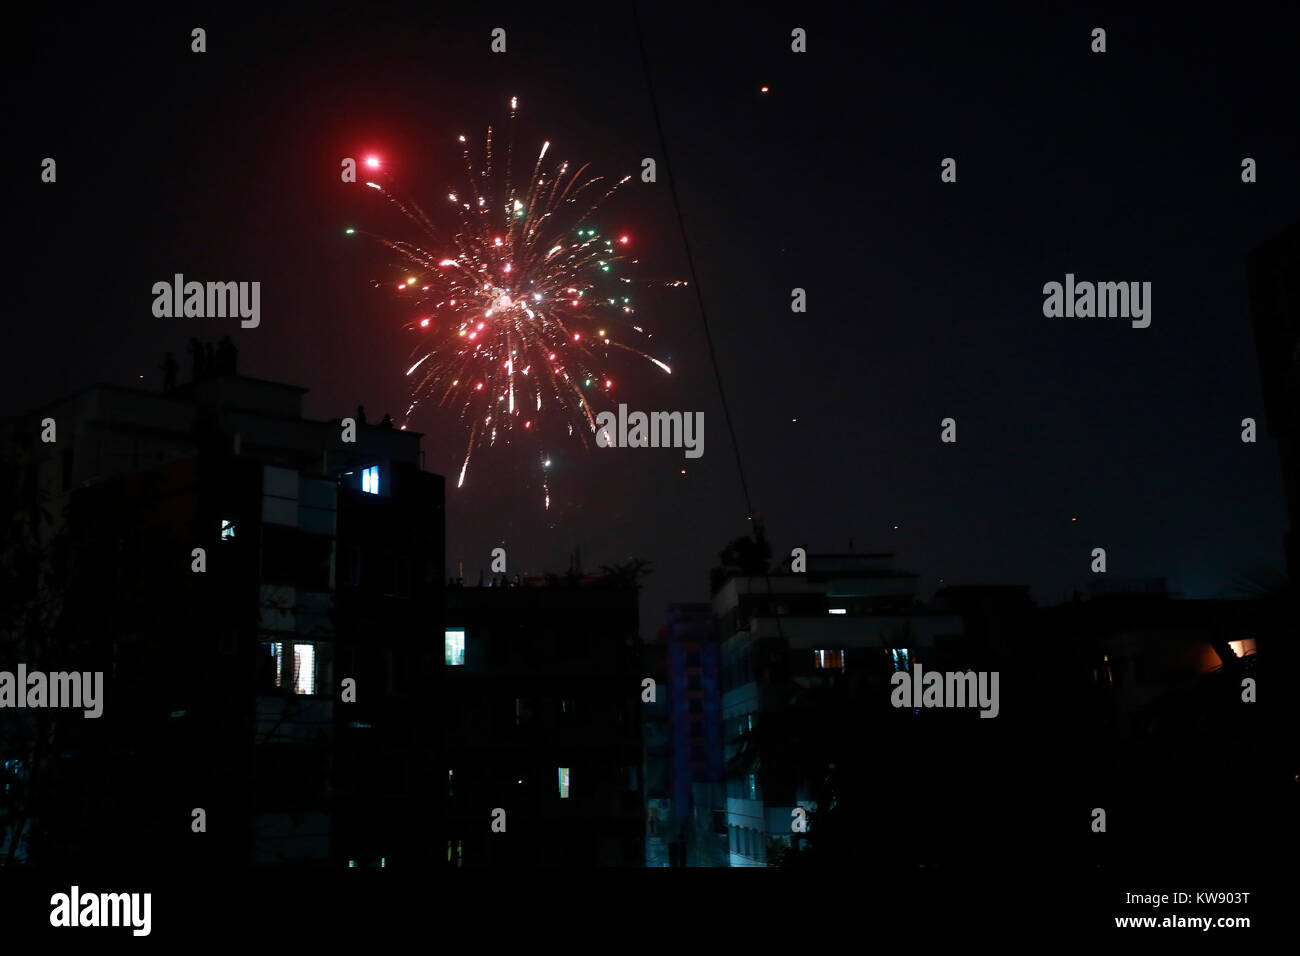 DHAKA, BANGLADESCH - Januar 01, 2017: Feuerwerk den Himmel mit der Luft mit lautem Knallen der Böller gefüllt, so viele auf Dächern versammelten Englisch ins neue Jahr zu feiern, trotz eines Verbots auf Open-air-Programmierer und Parteien, und Feuerwerk. Dhaka, Bangladesch. Stockfoto